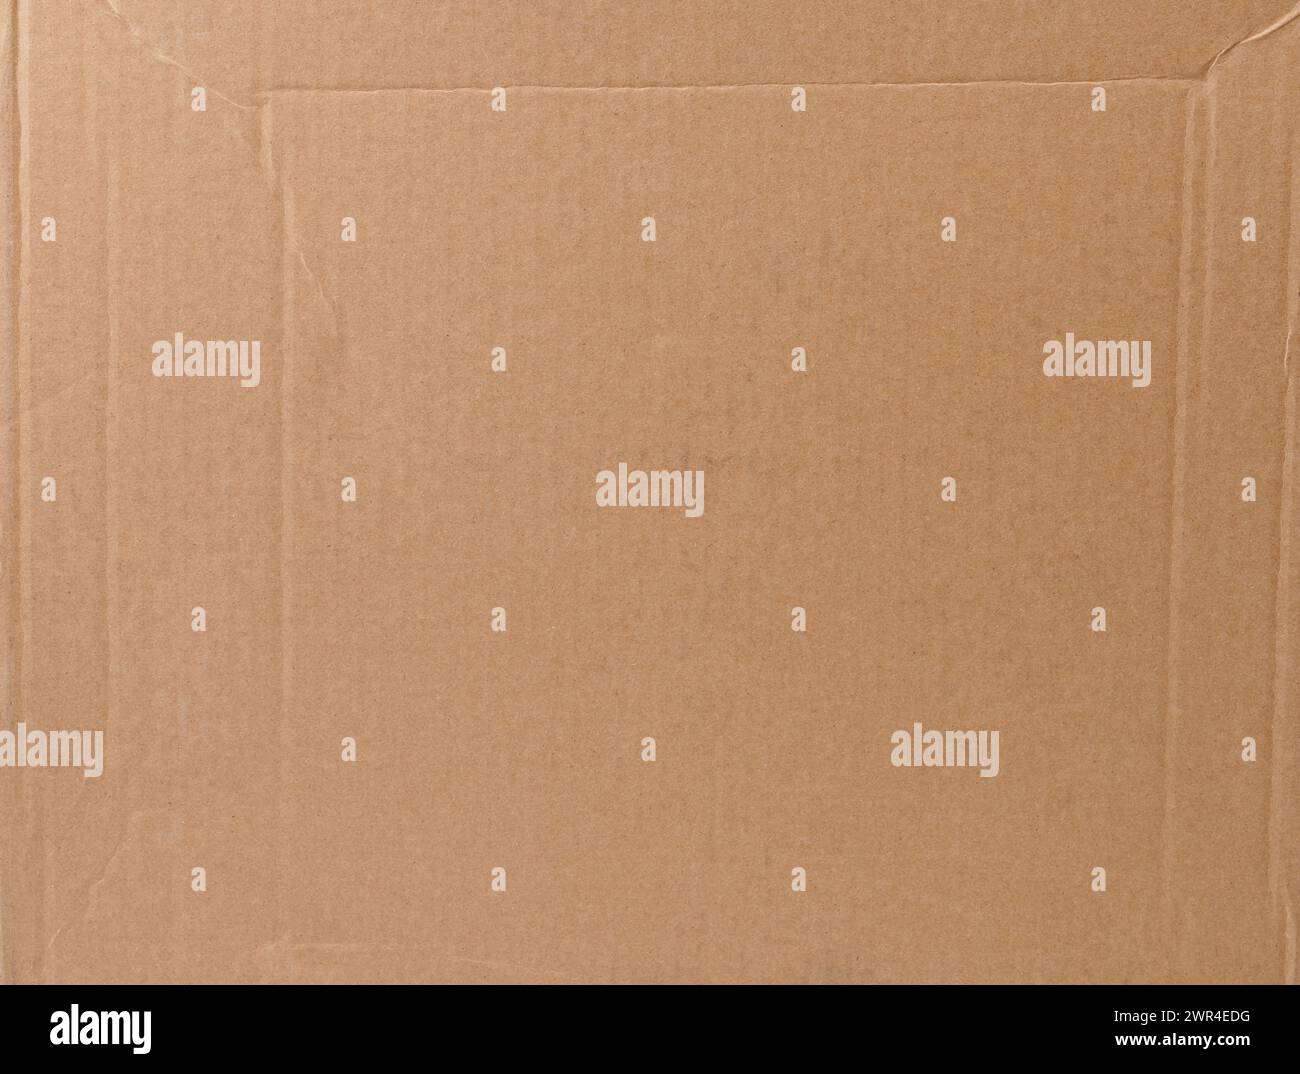 Pagina di carta riciclata di colore beige con linea di piegatura a strisce Foto Stock